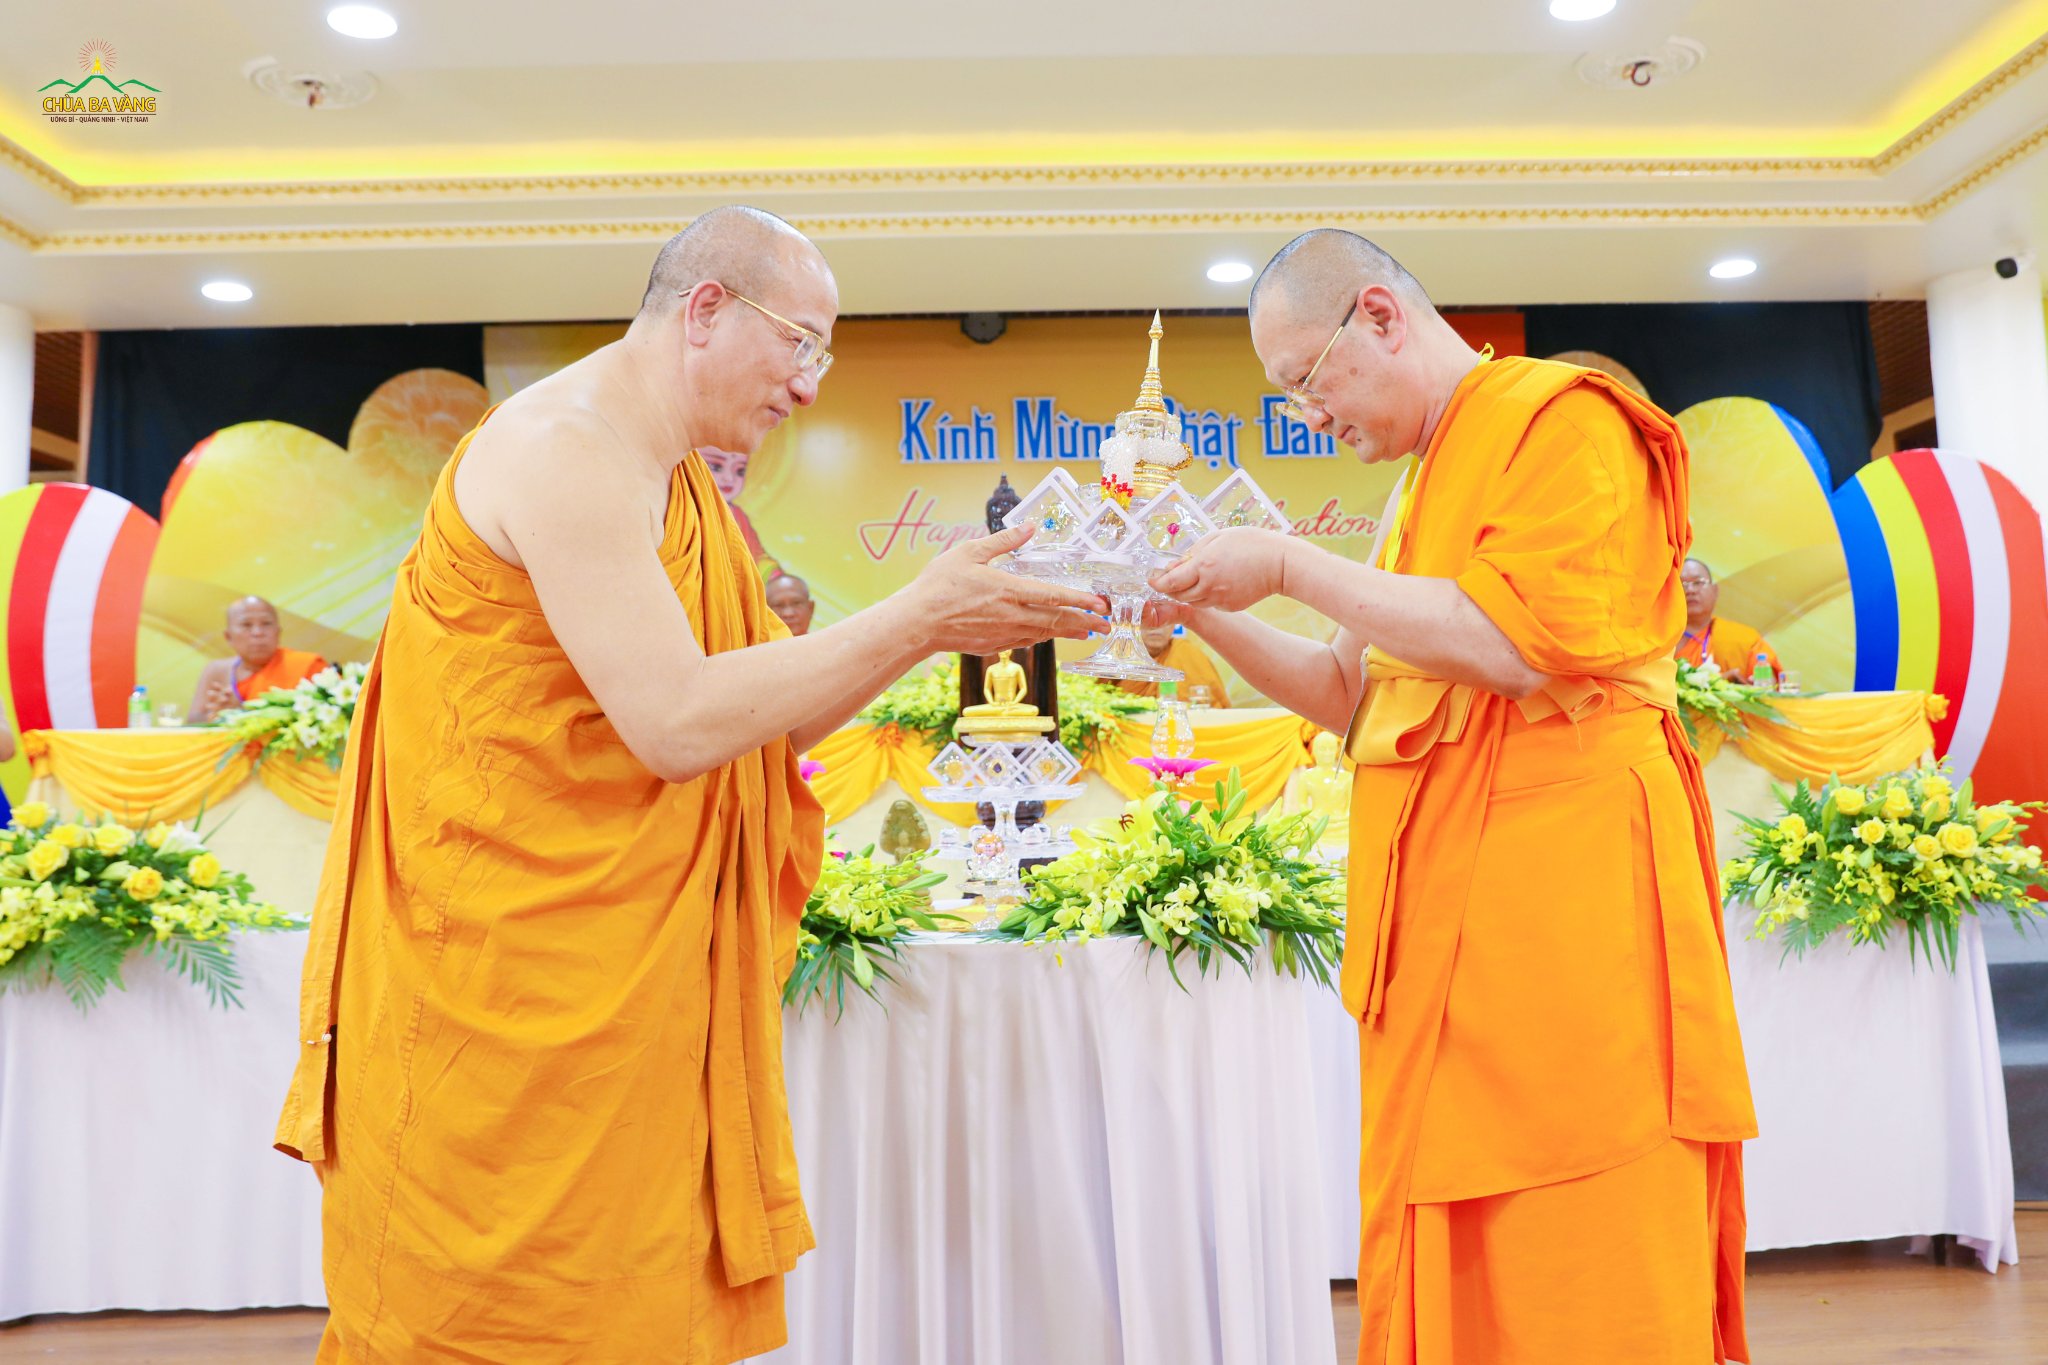 Thượng tọa Phra Vides Dhammabhorn - Chủ tịch hội đồng quỹ Dhammakaya, trưởng ban Phật giáo Quốc tế điều hành hơn 205 chi nhánh/180 nước trên thế giới gửi tặng chùa Ba Vàng Xá Lợi Phật